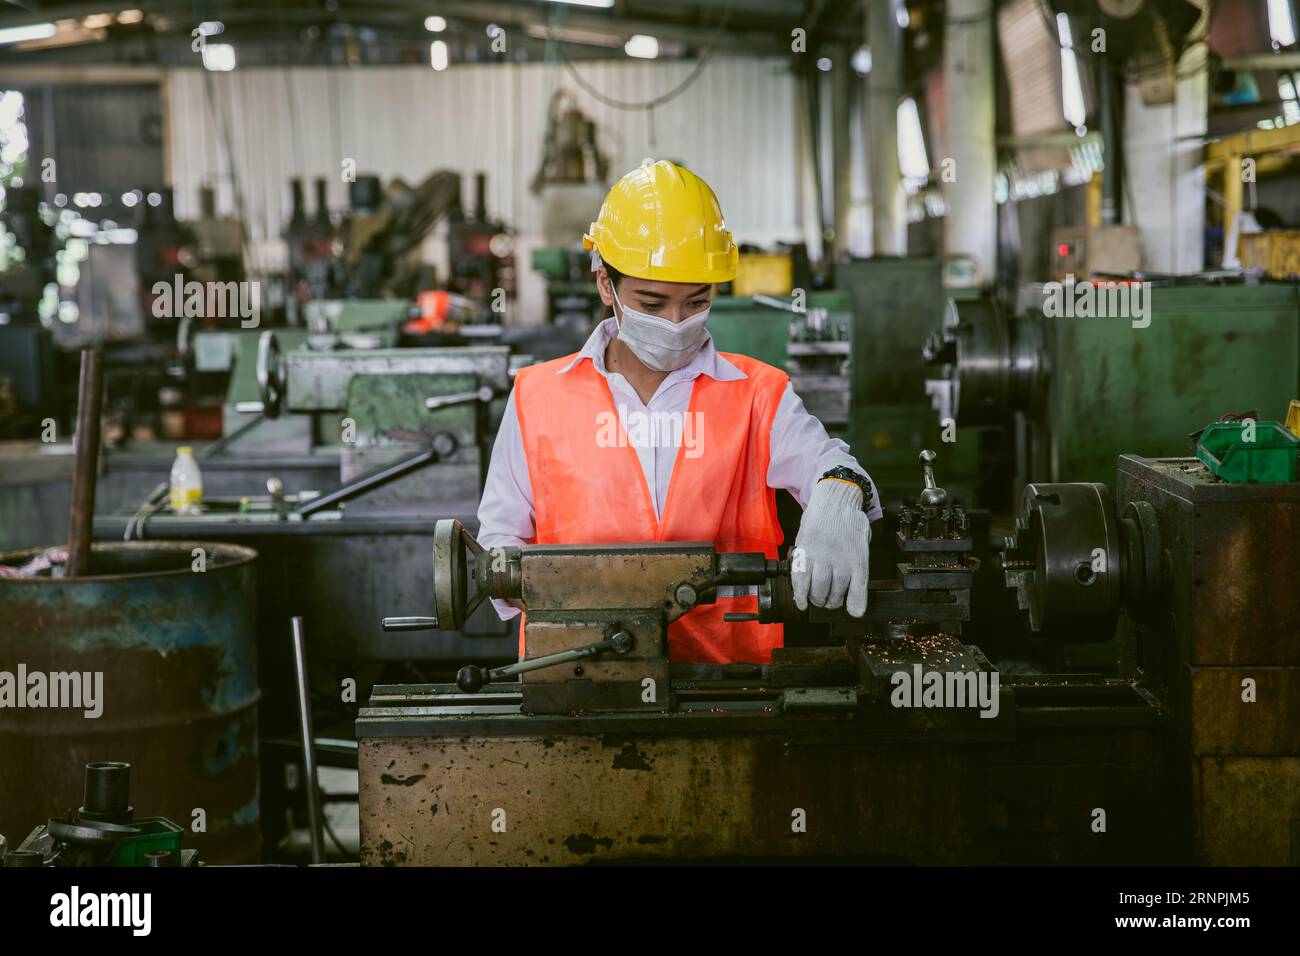 Asiatische Arbeitnehmerin, die in der Schwermetallindustrie arbeitet, trägt Gesichtsmaske für Hygiene, gesunde Sicherheit Stockfoto